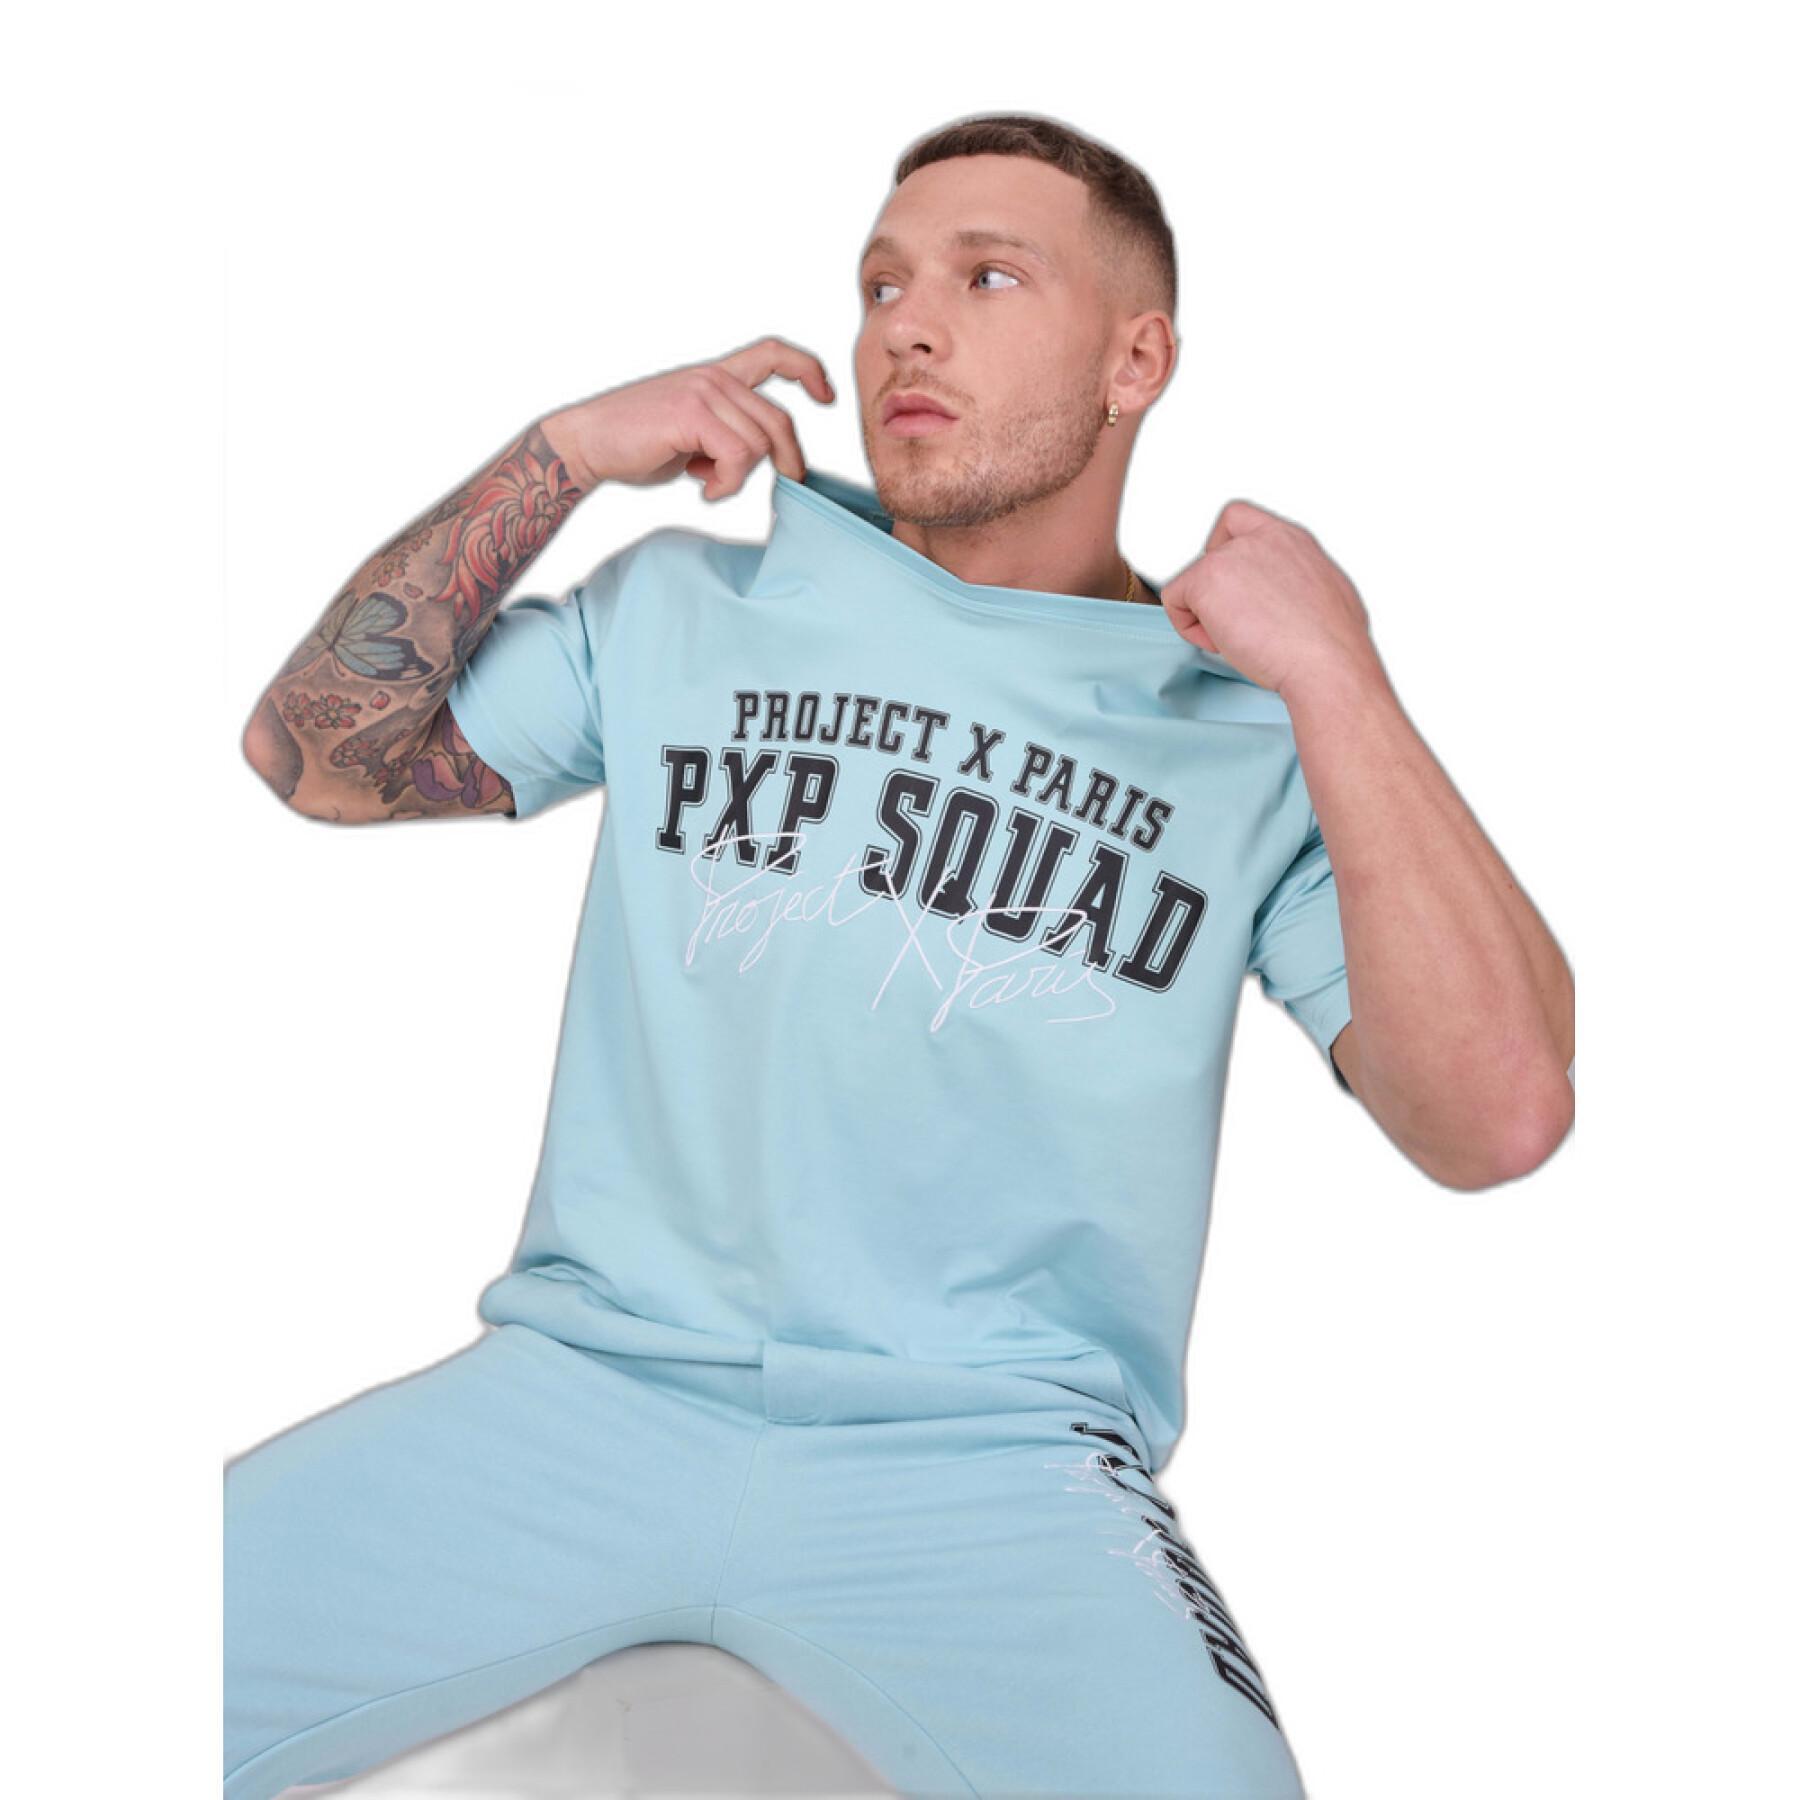 Camiseta Project X Paris pxp squad